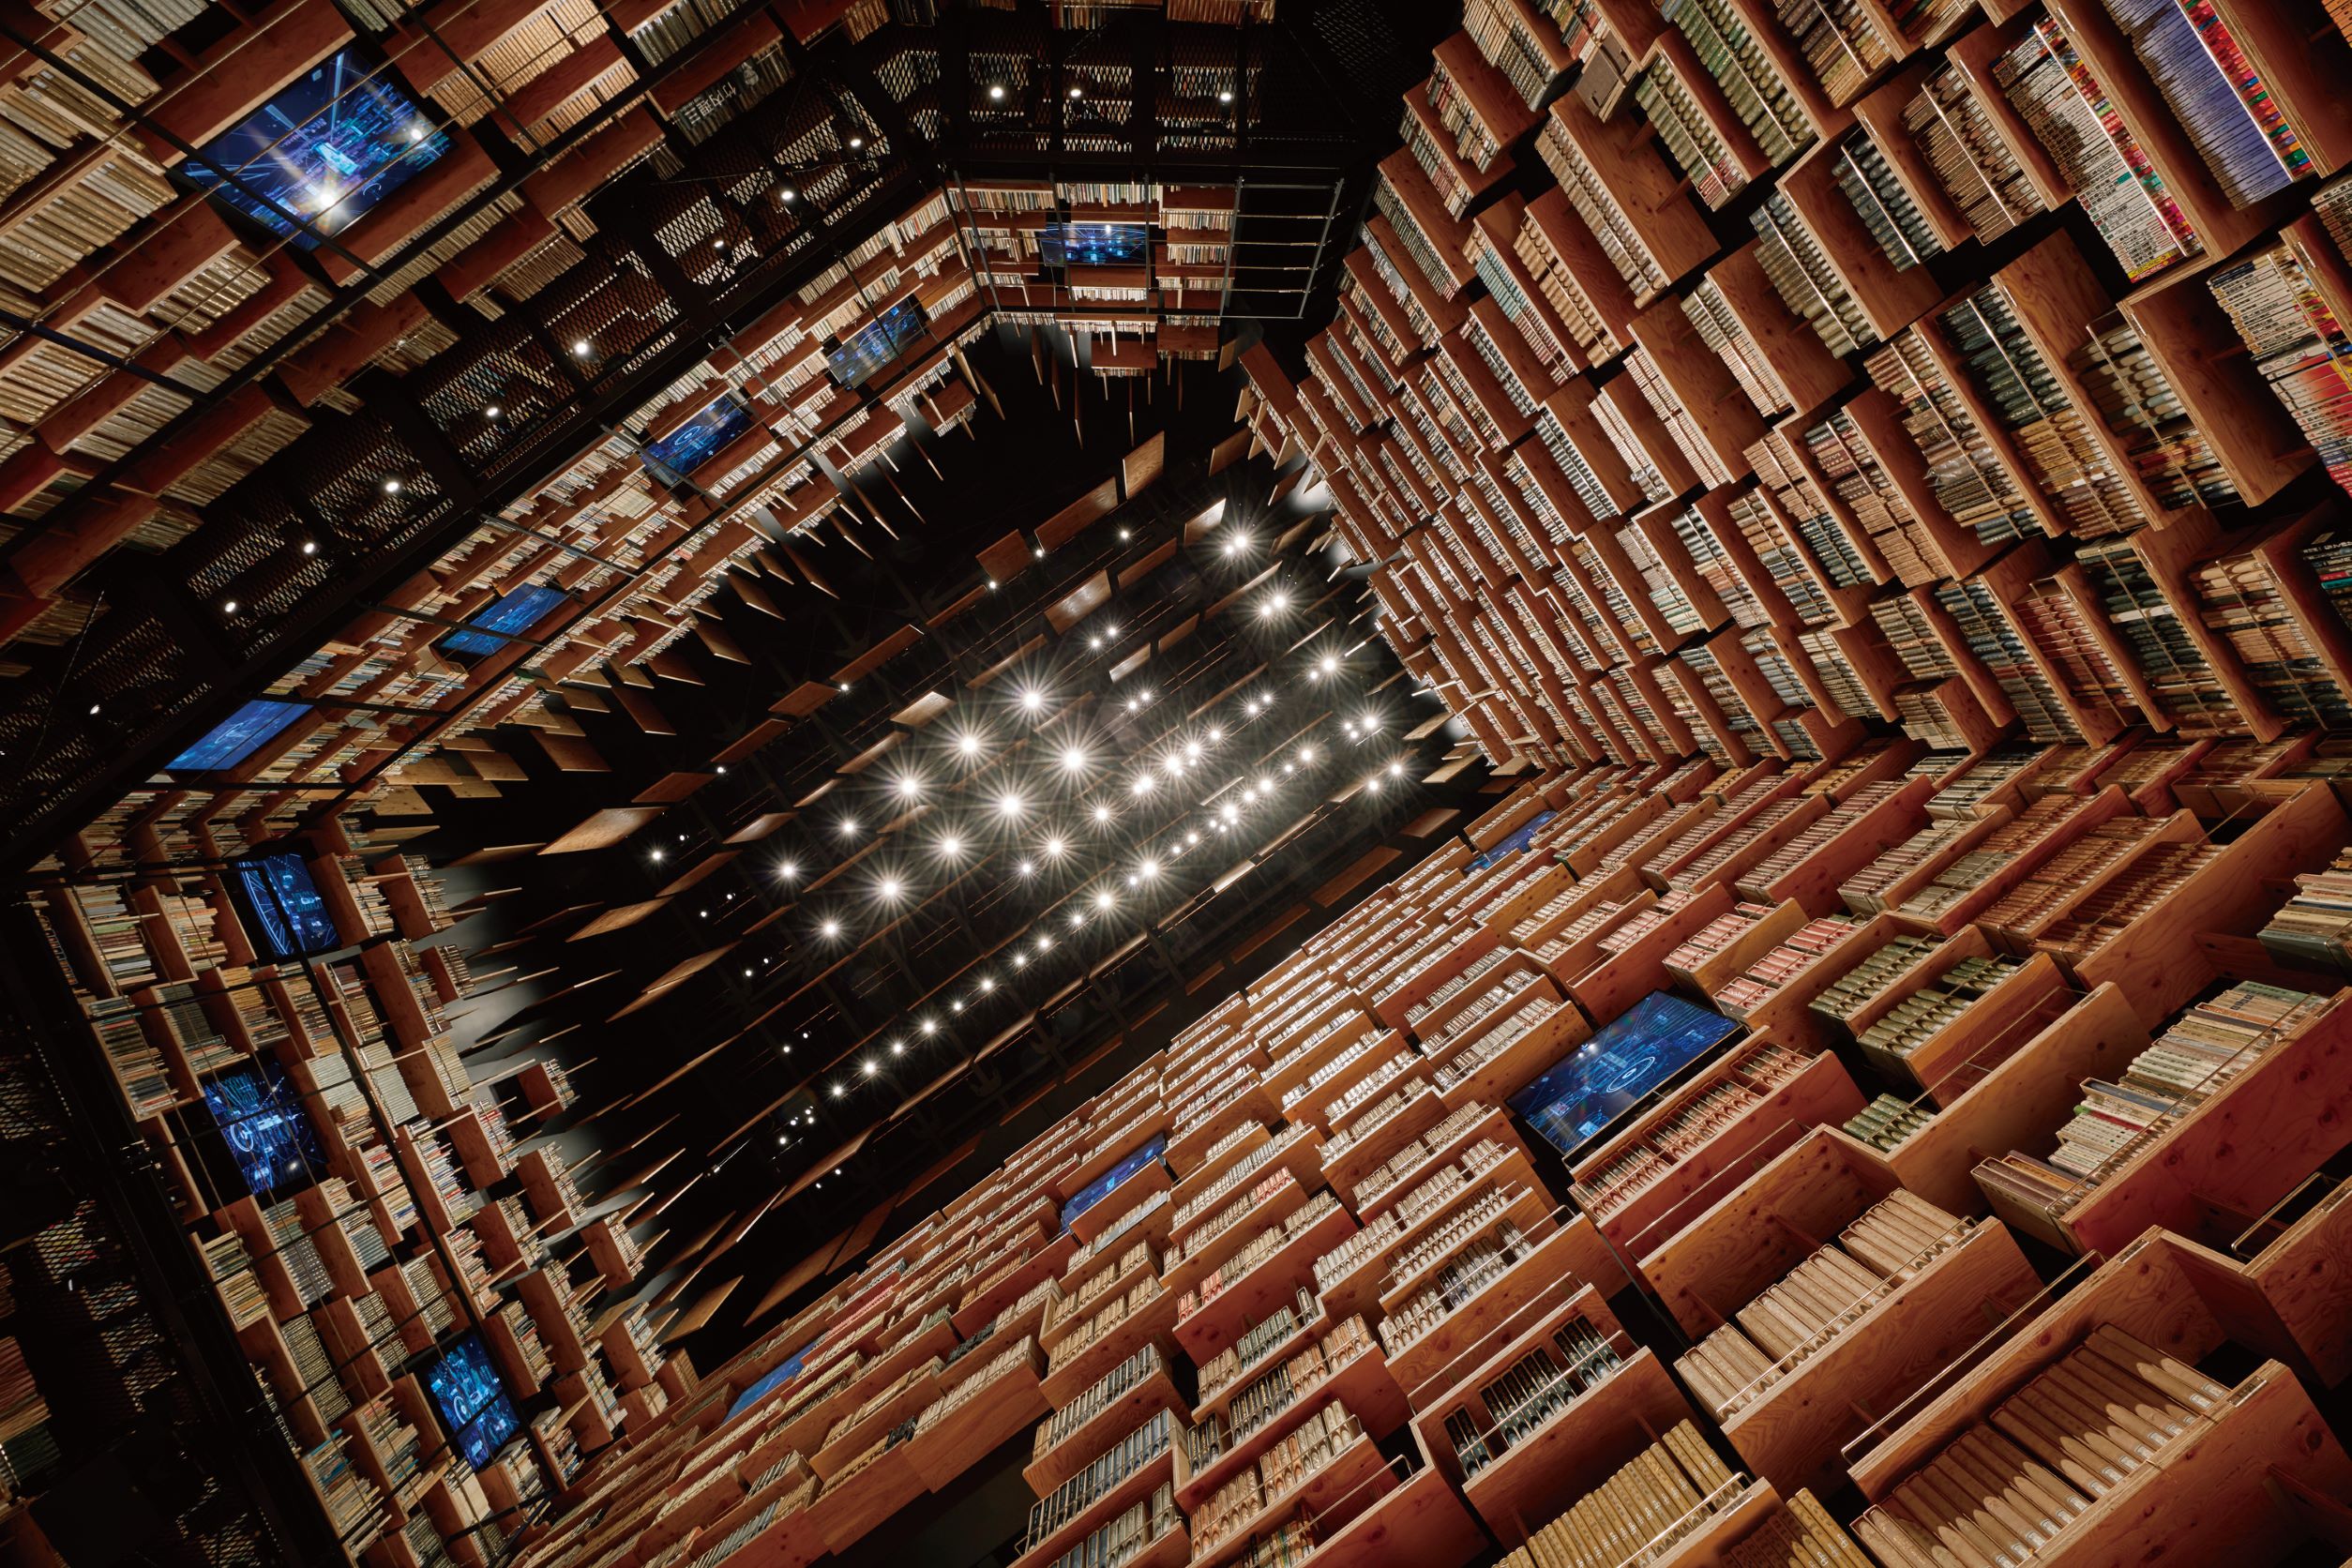 以大脑细胞为设计灵感，所建构出的书架剧场图书空间。